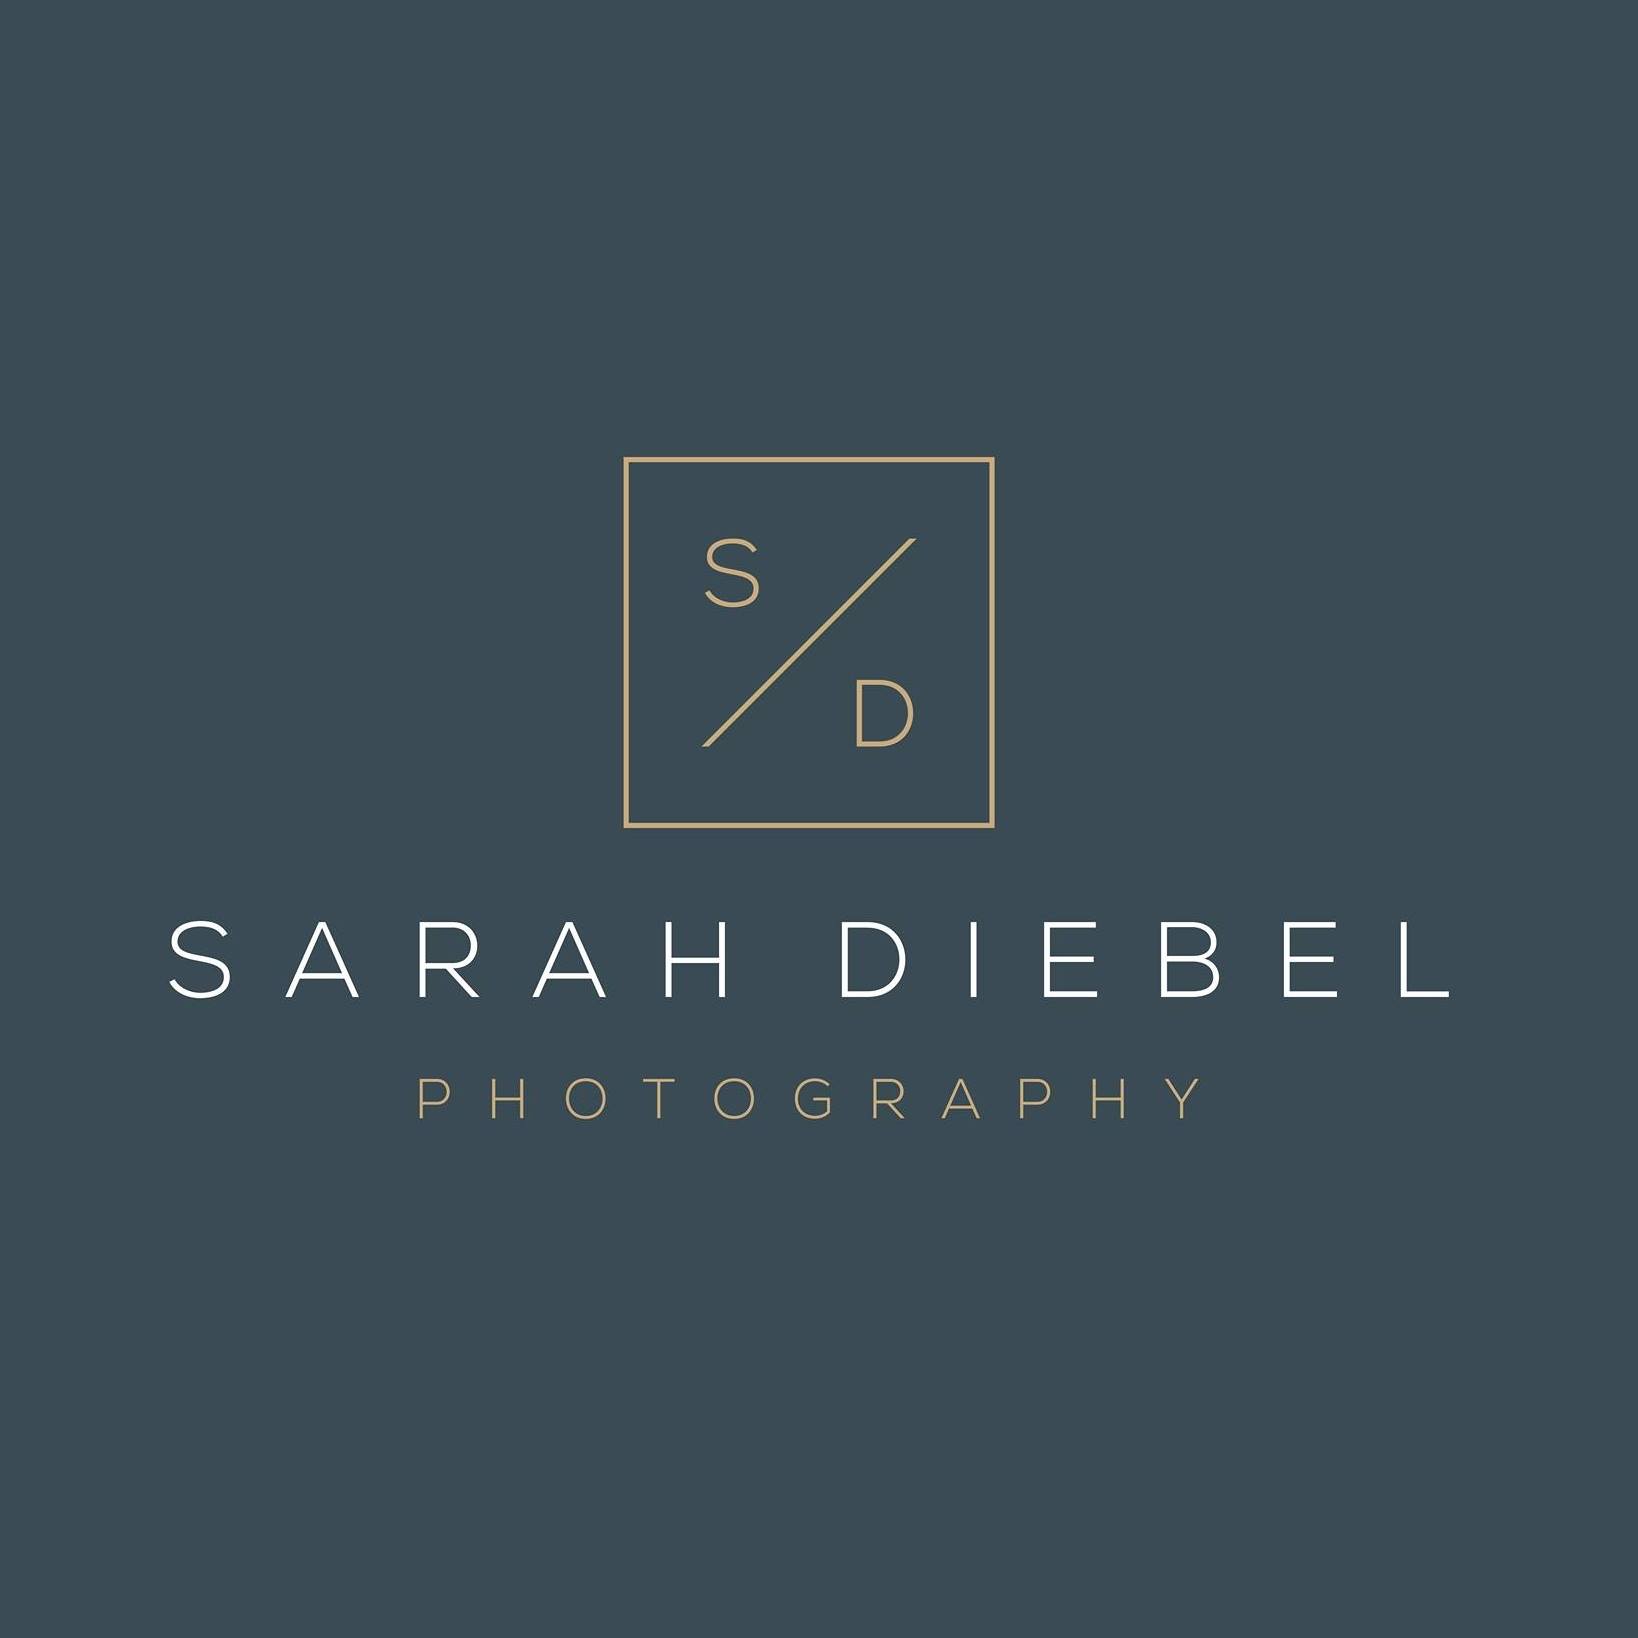 Sarah Diebel Photography